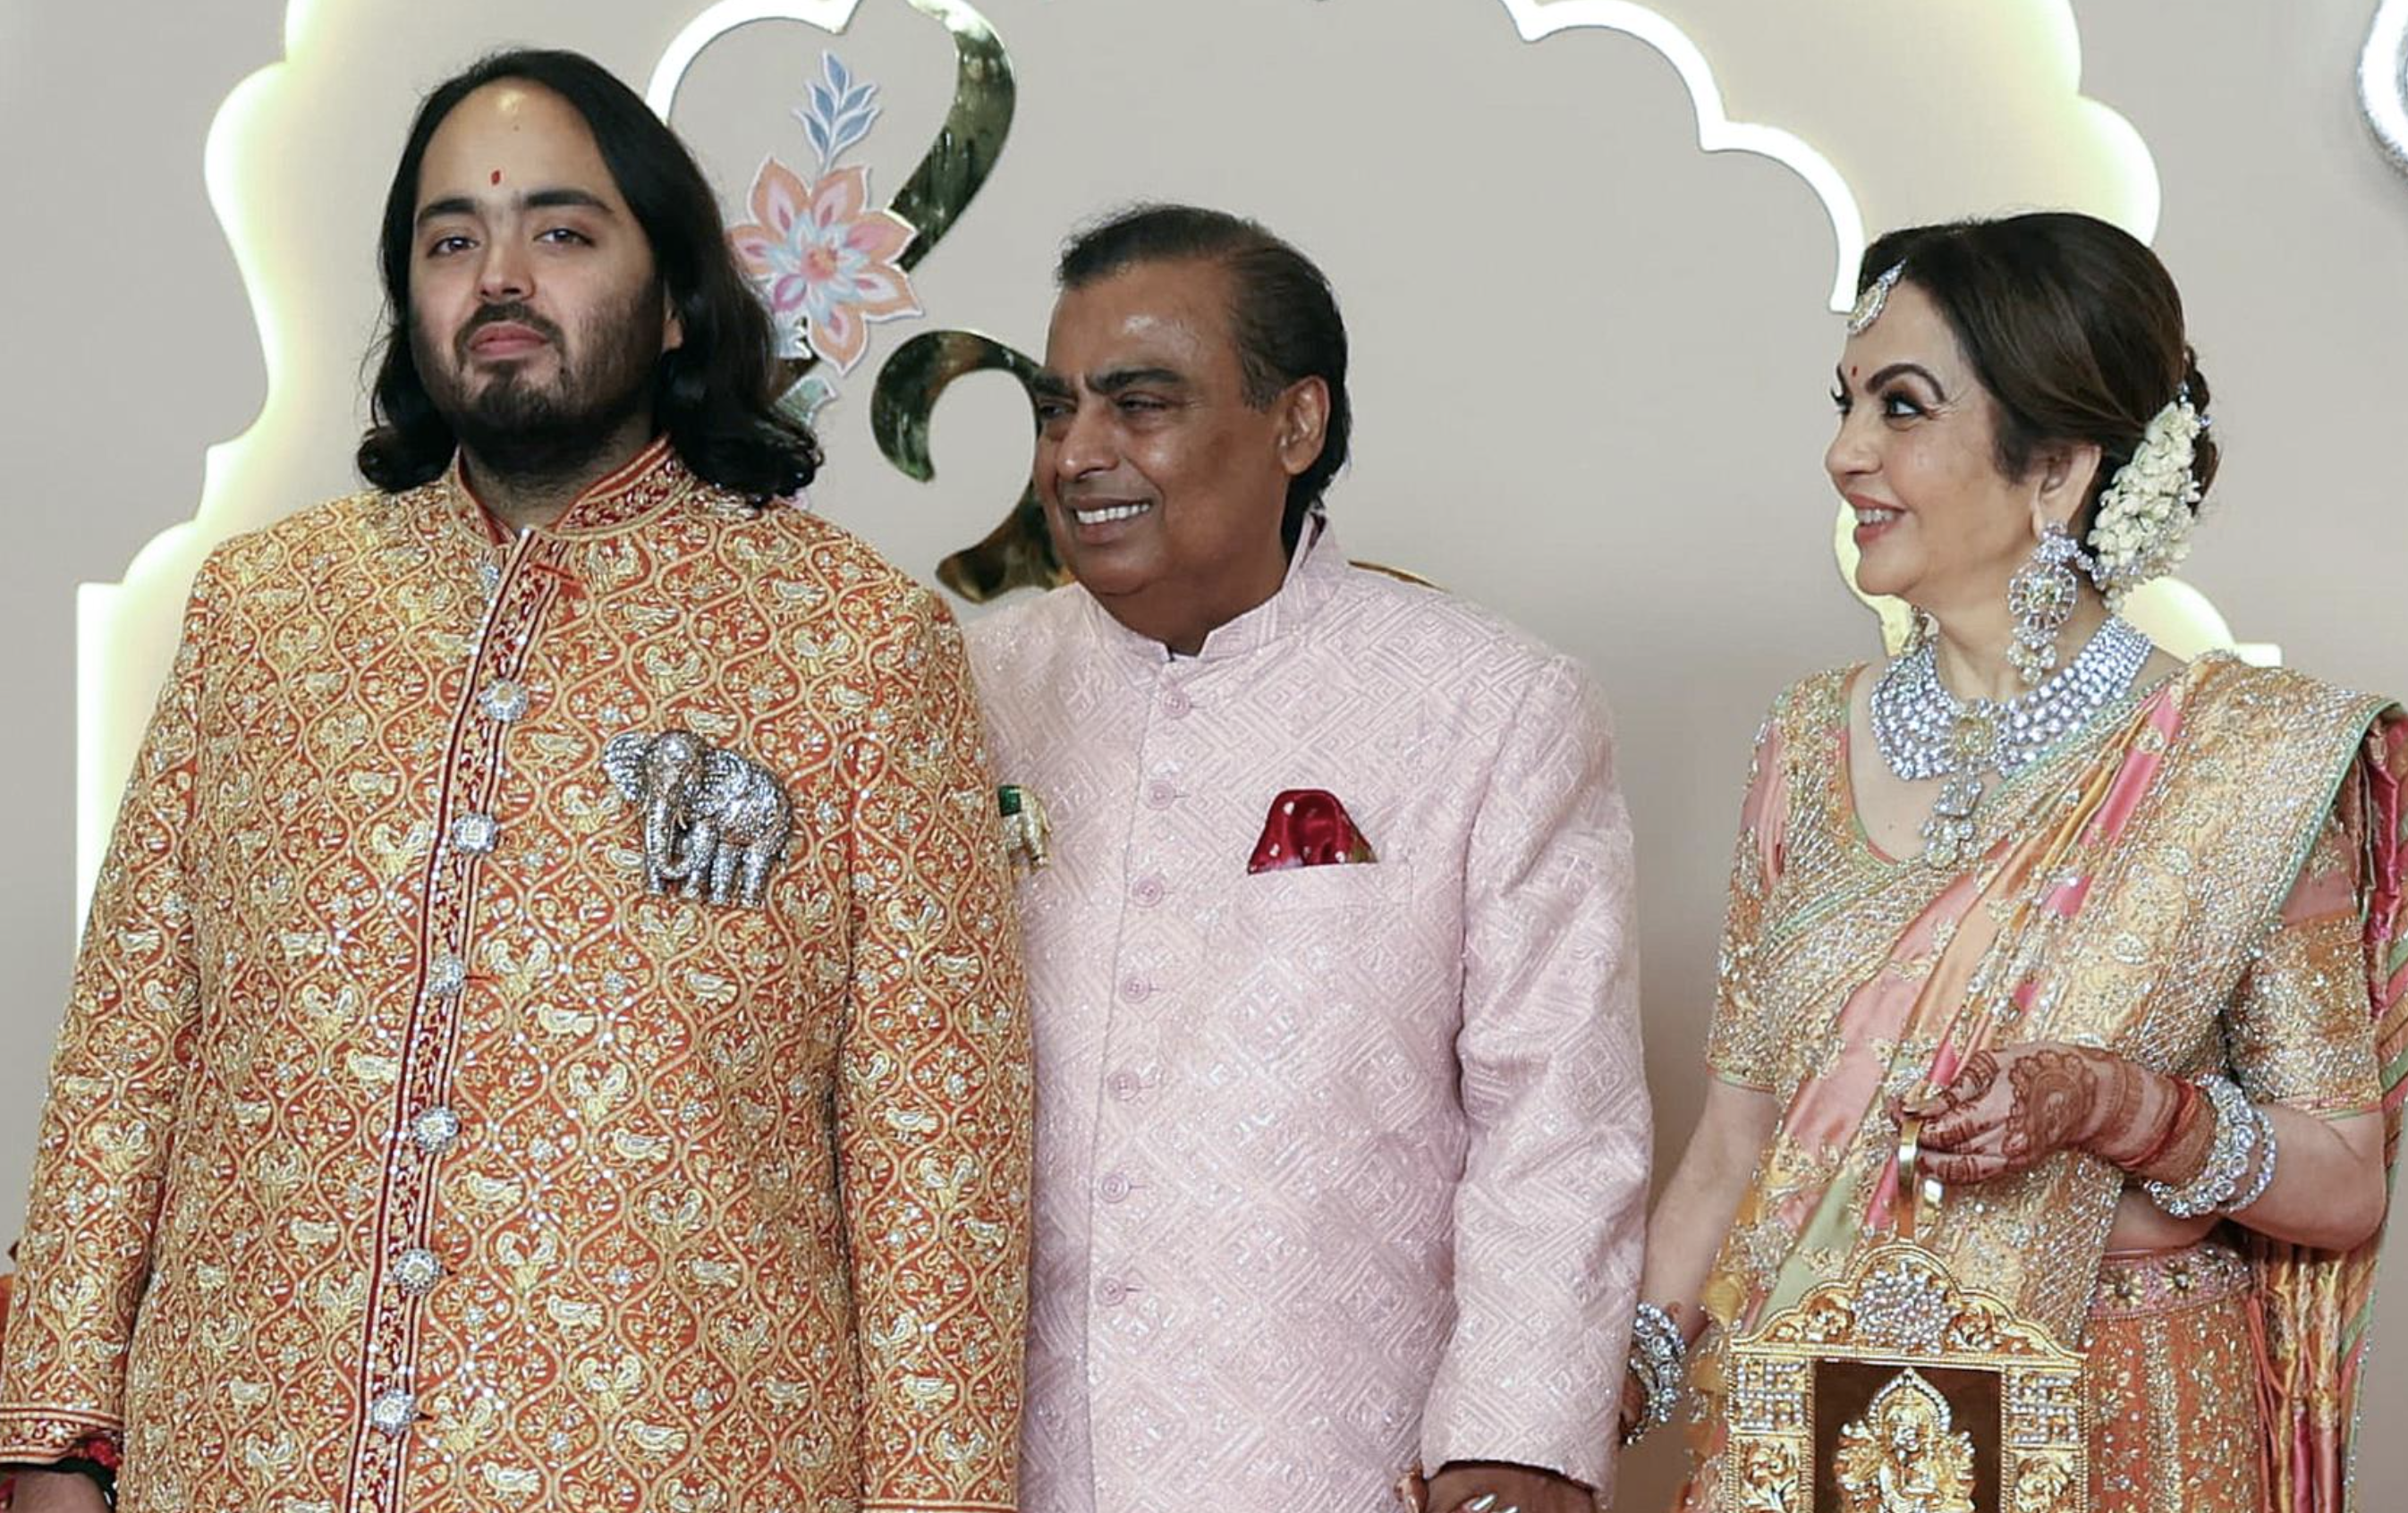 Estas son las siderales cifras de la boda del hijo de Mukesh Ambani, el hombre más rico de Asia